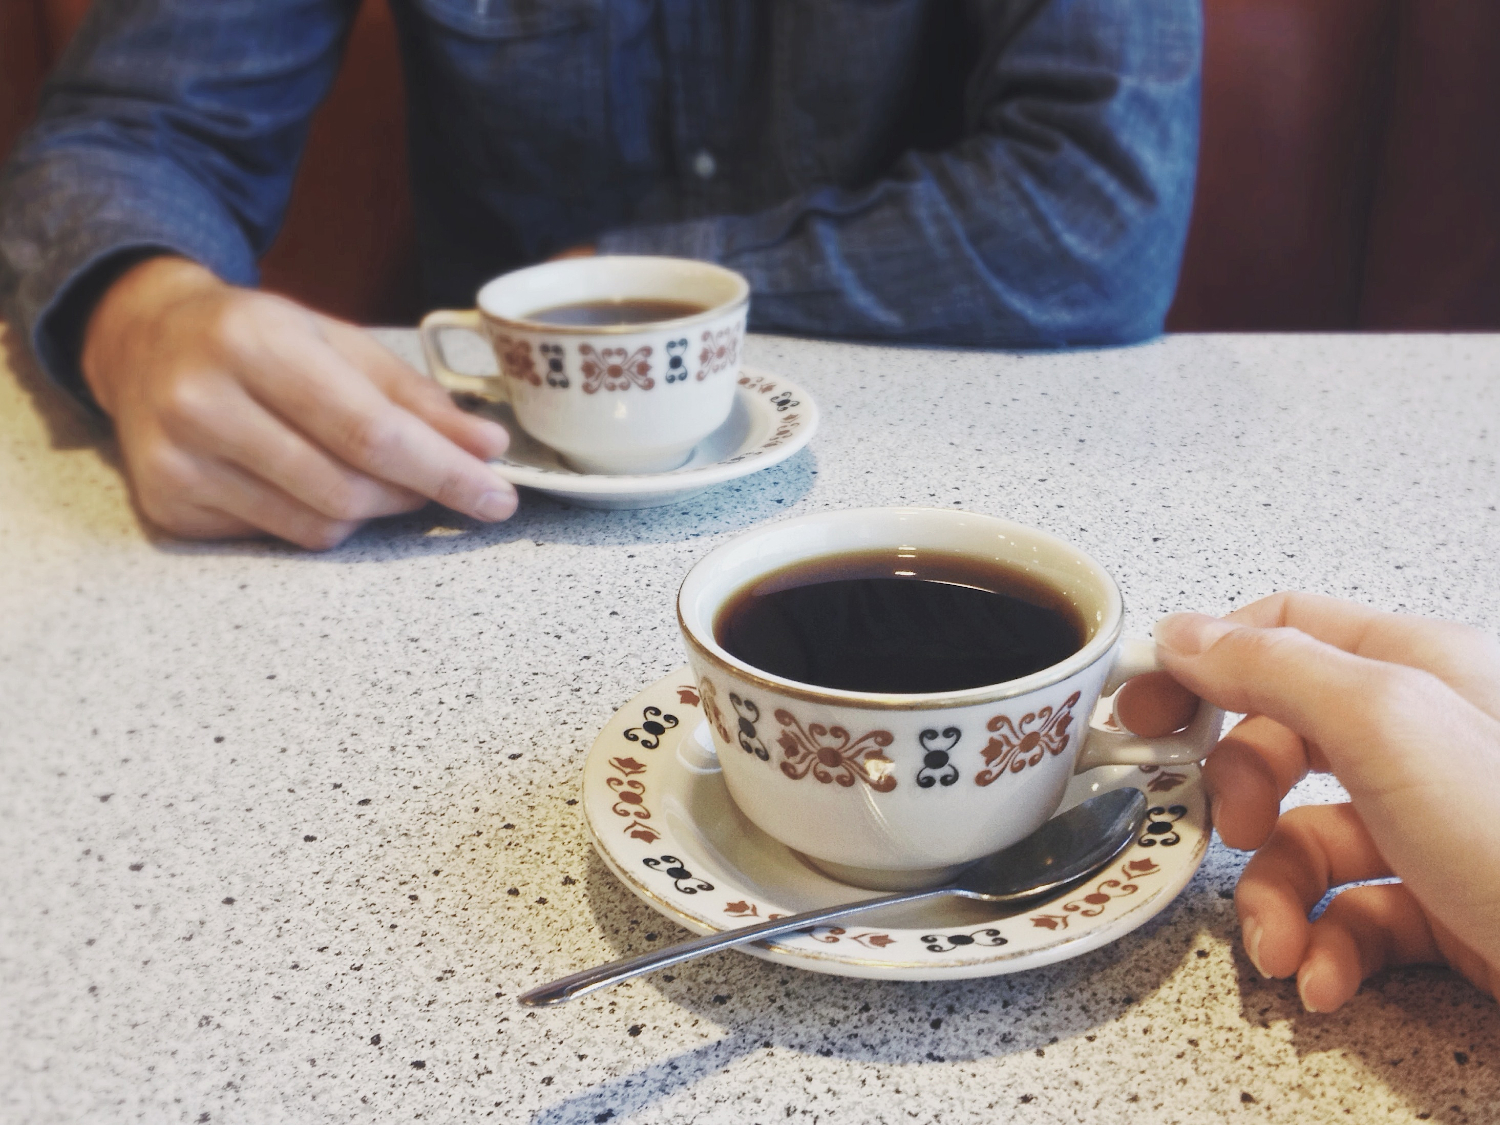 coffee at diner.jpg